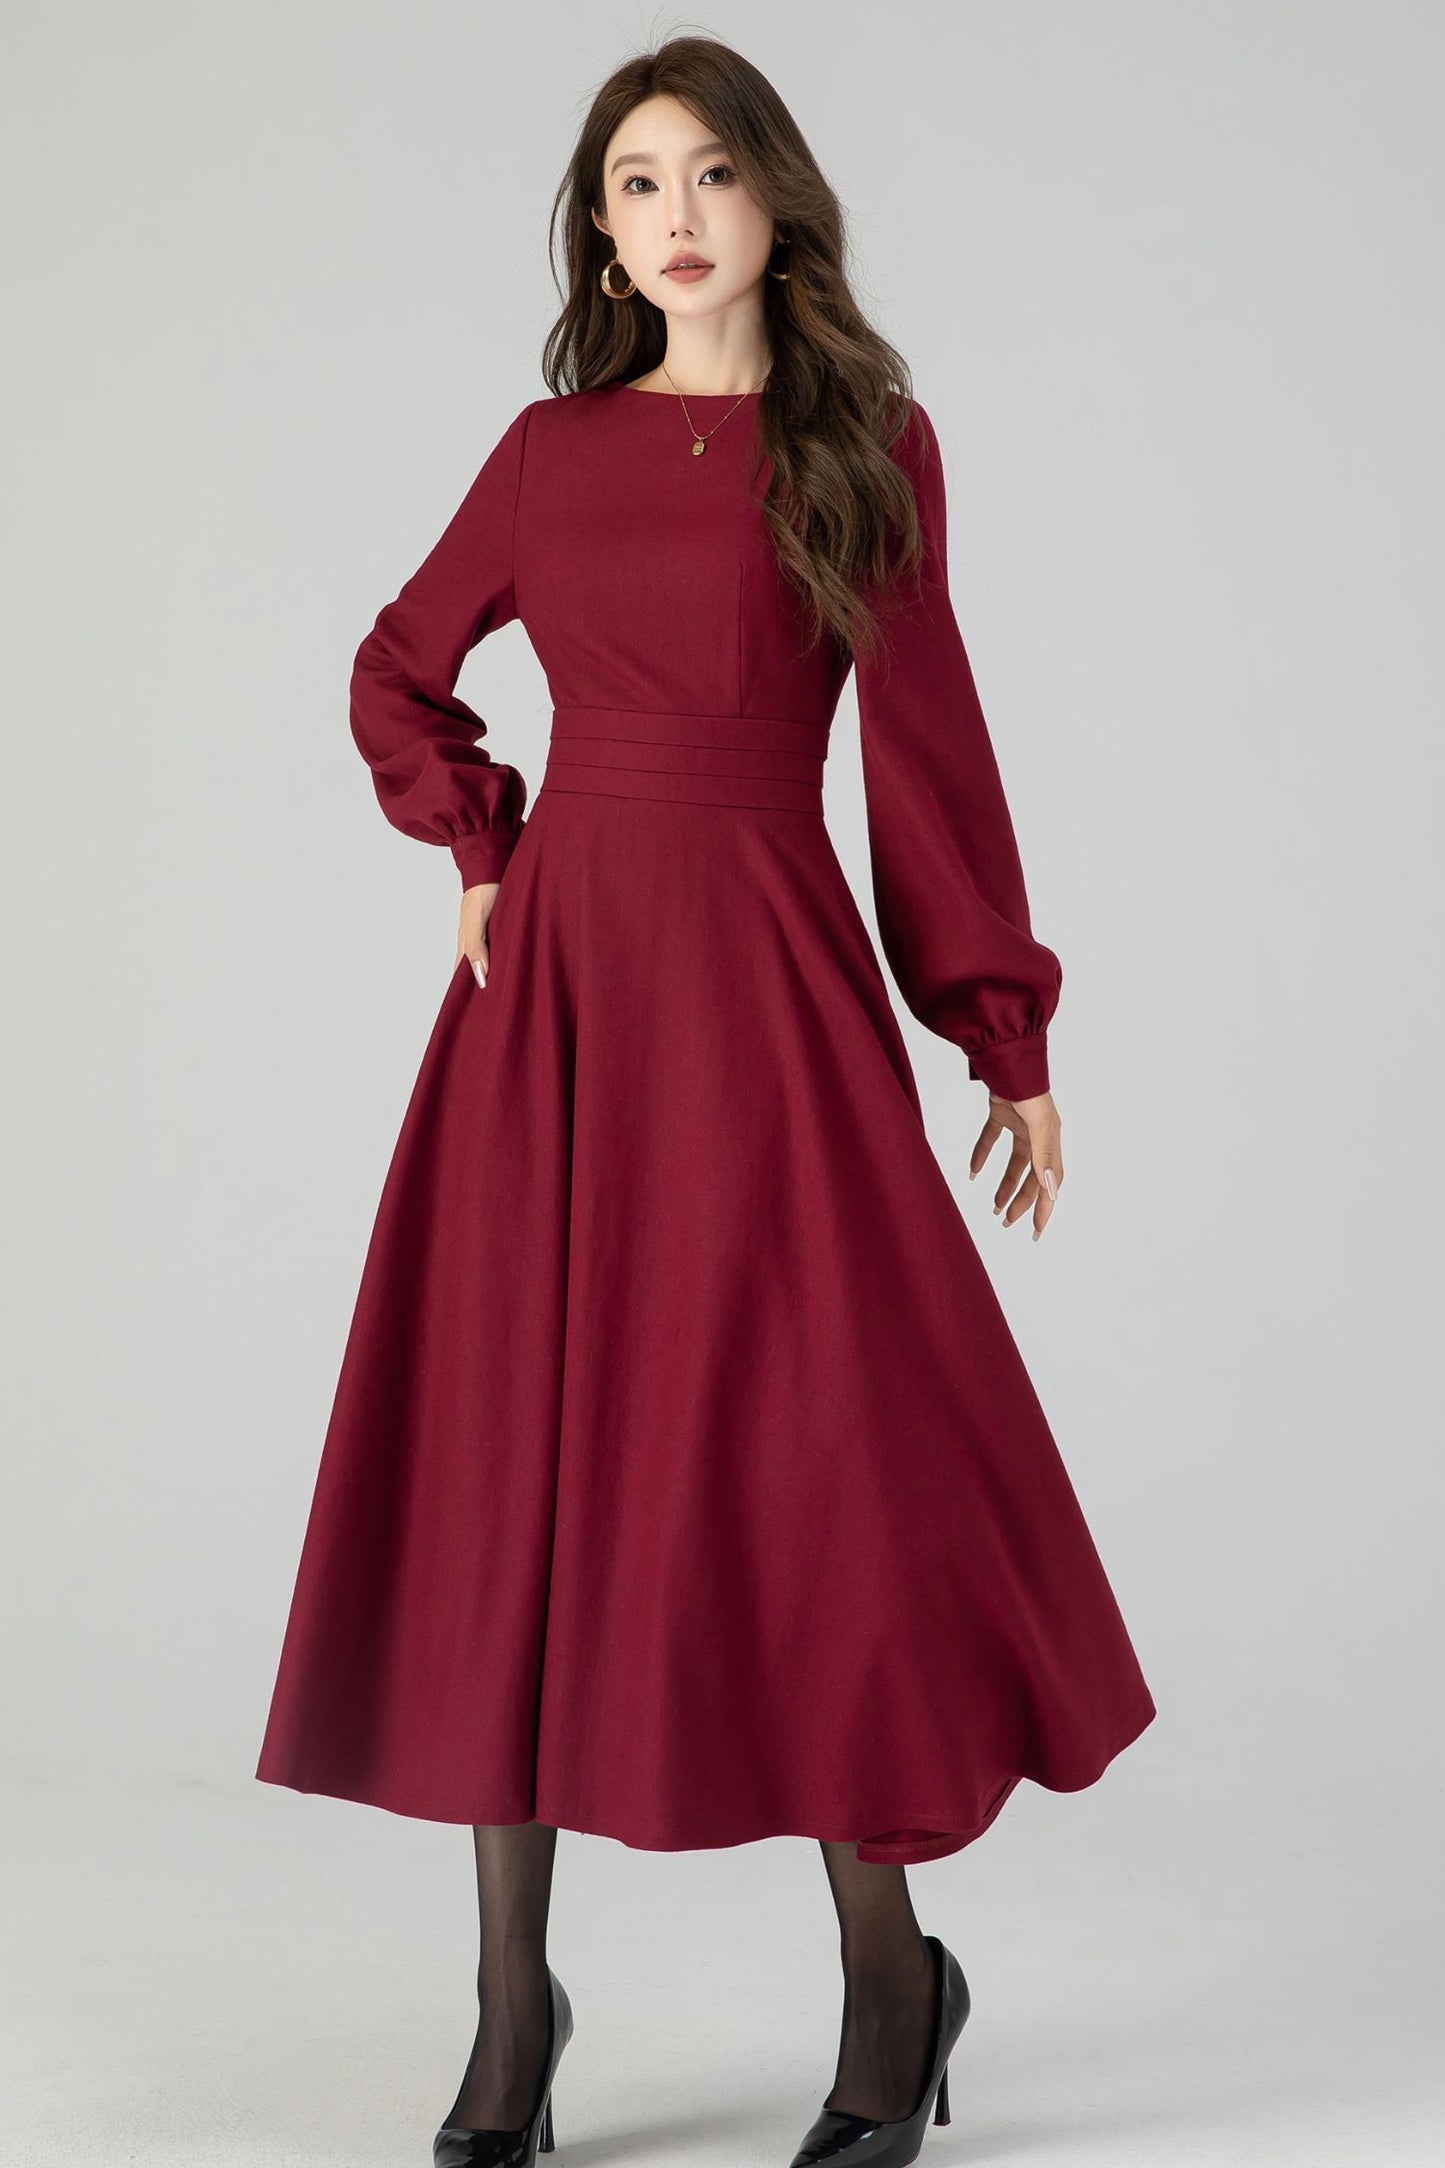 Burgundy swing winter wool dress for women 4550